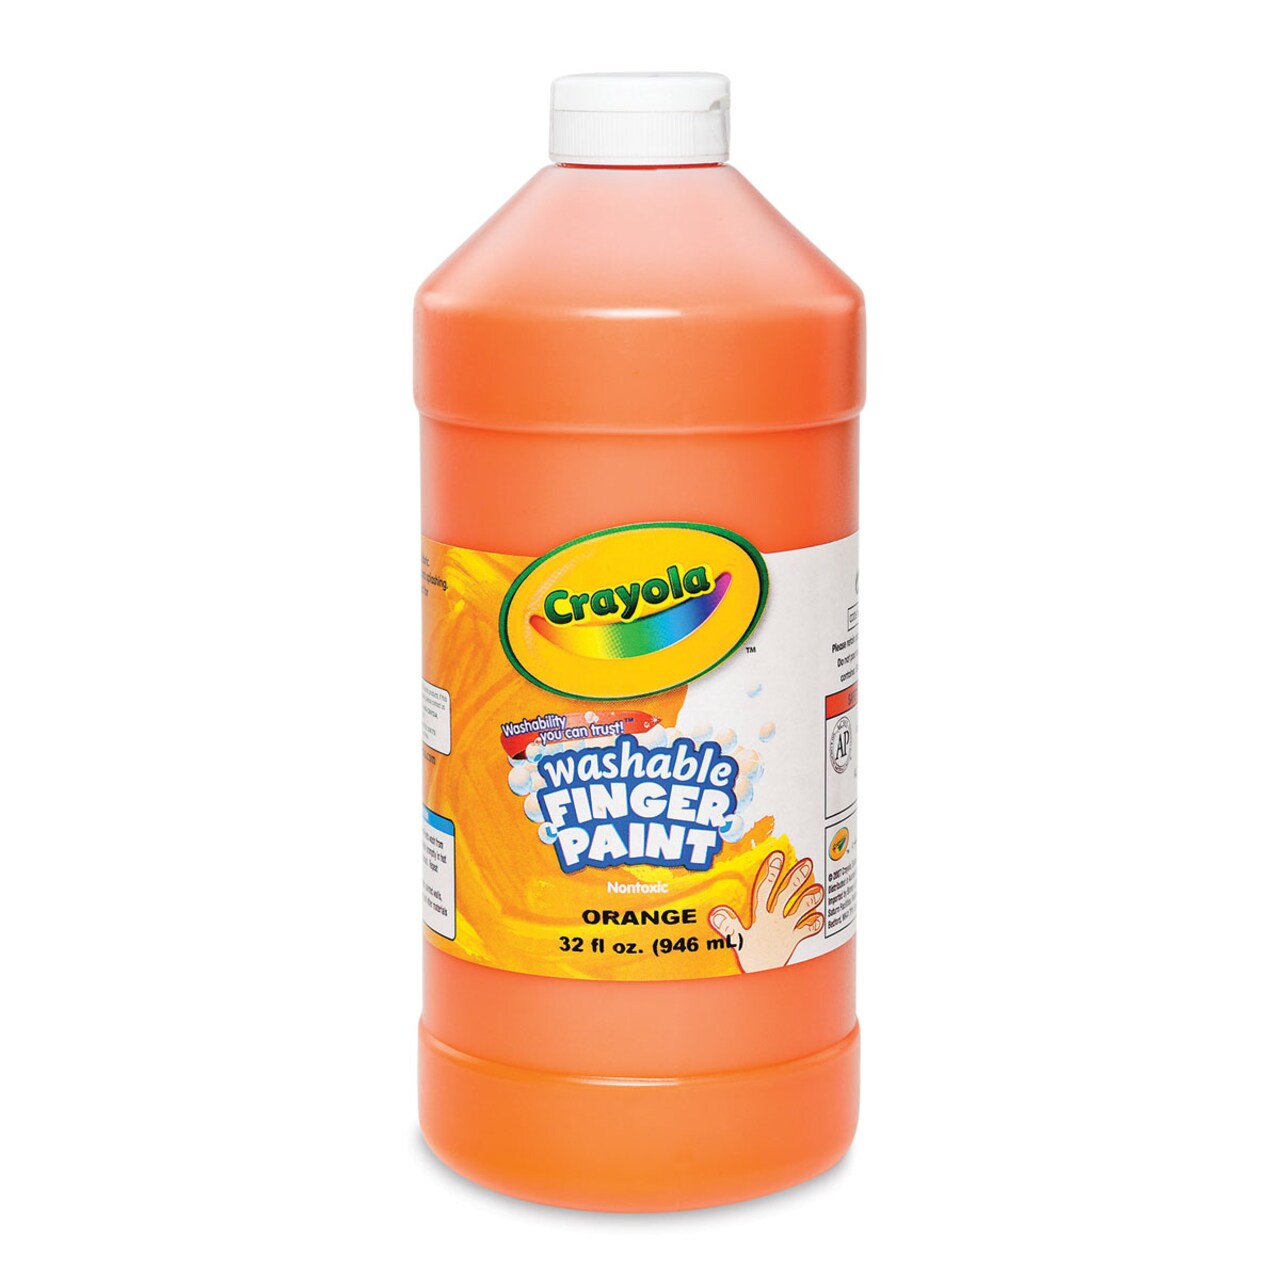 Crayola Washable Fingerpaint - Orange, 32 oz bottle